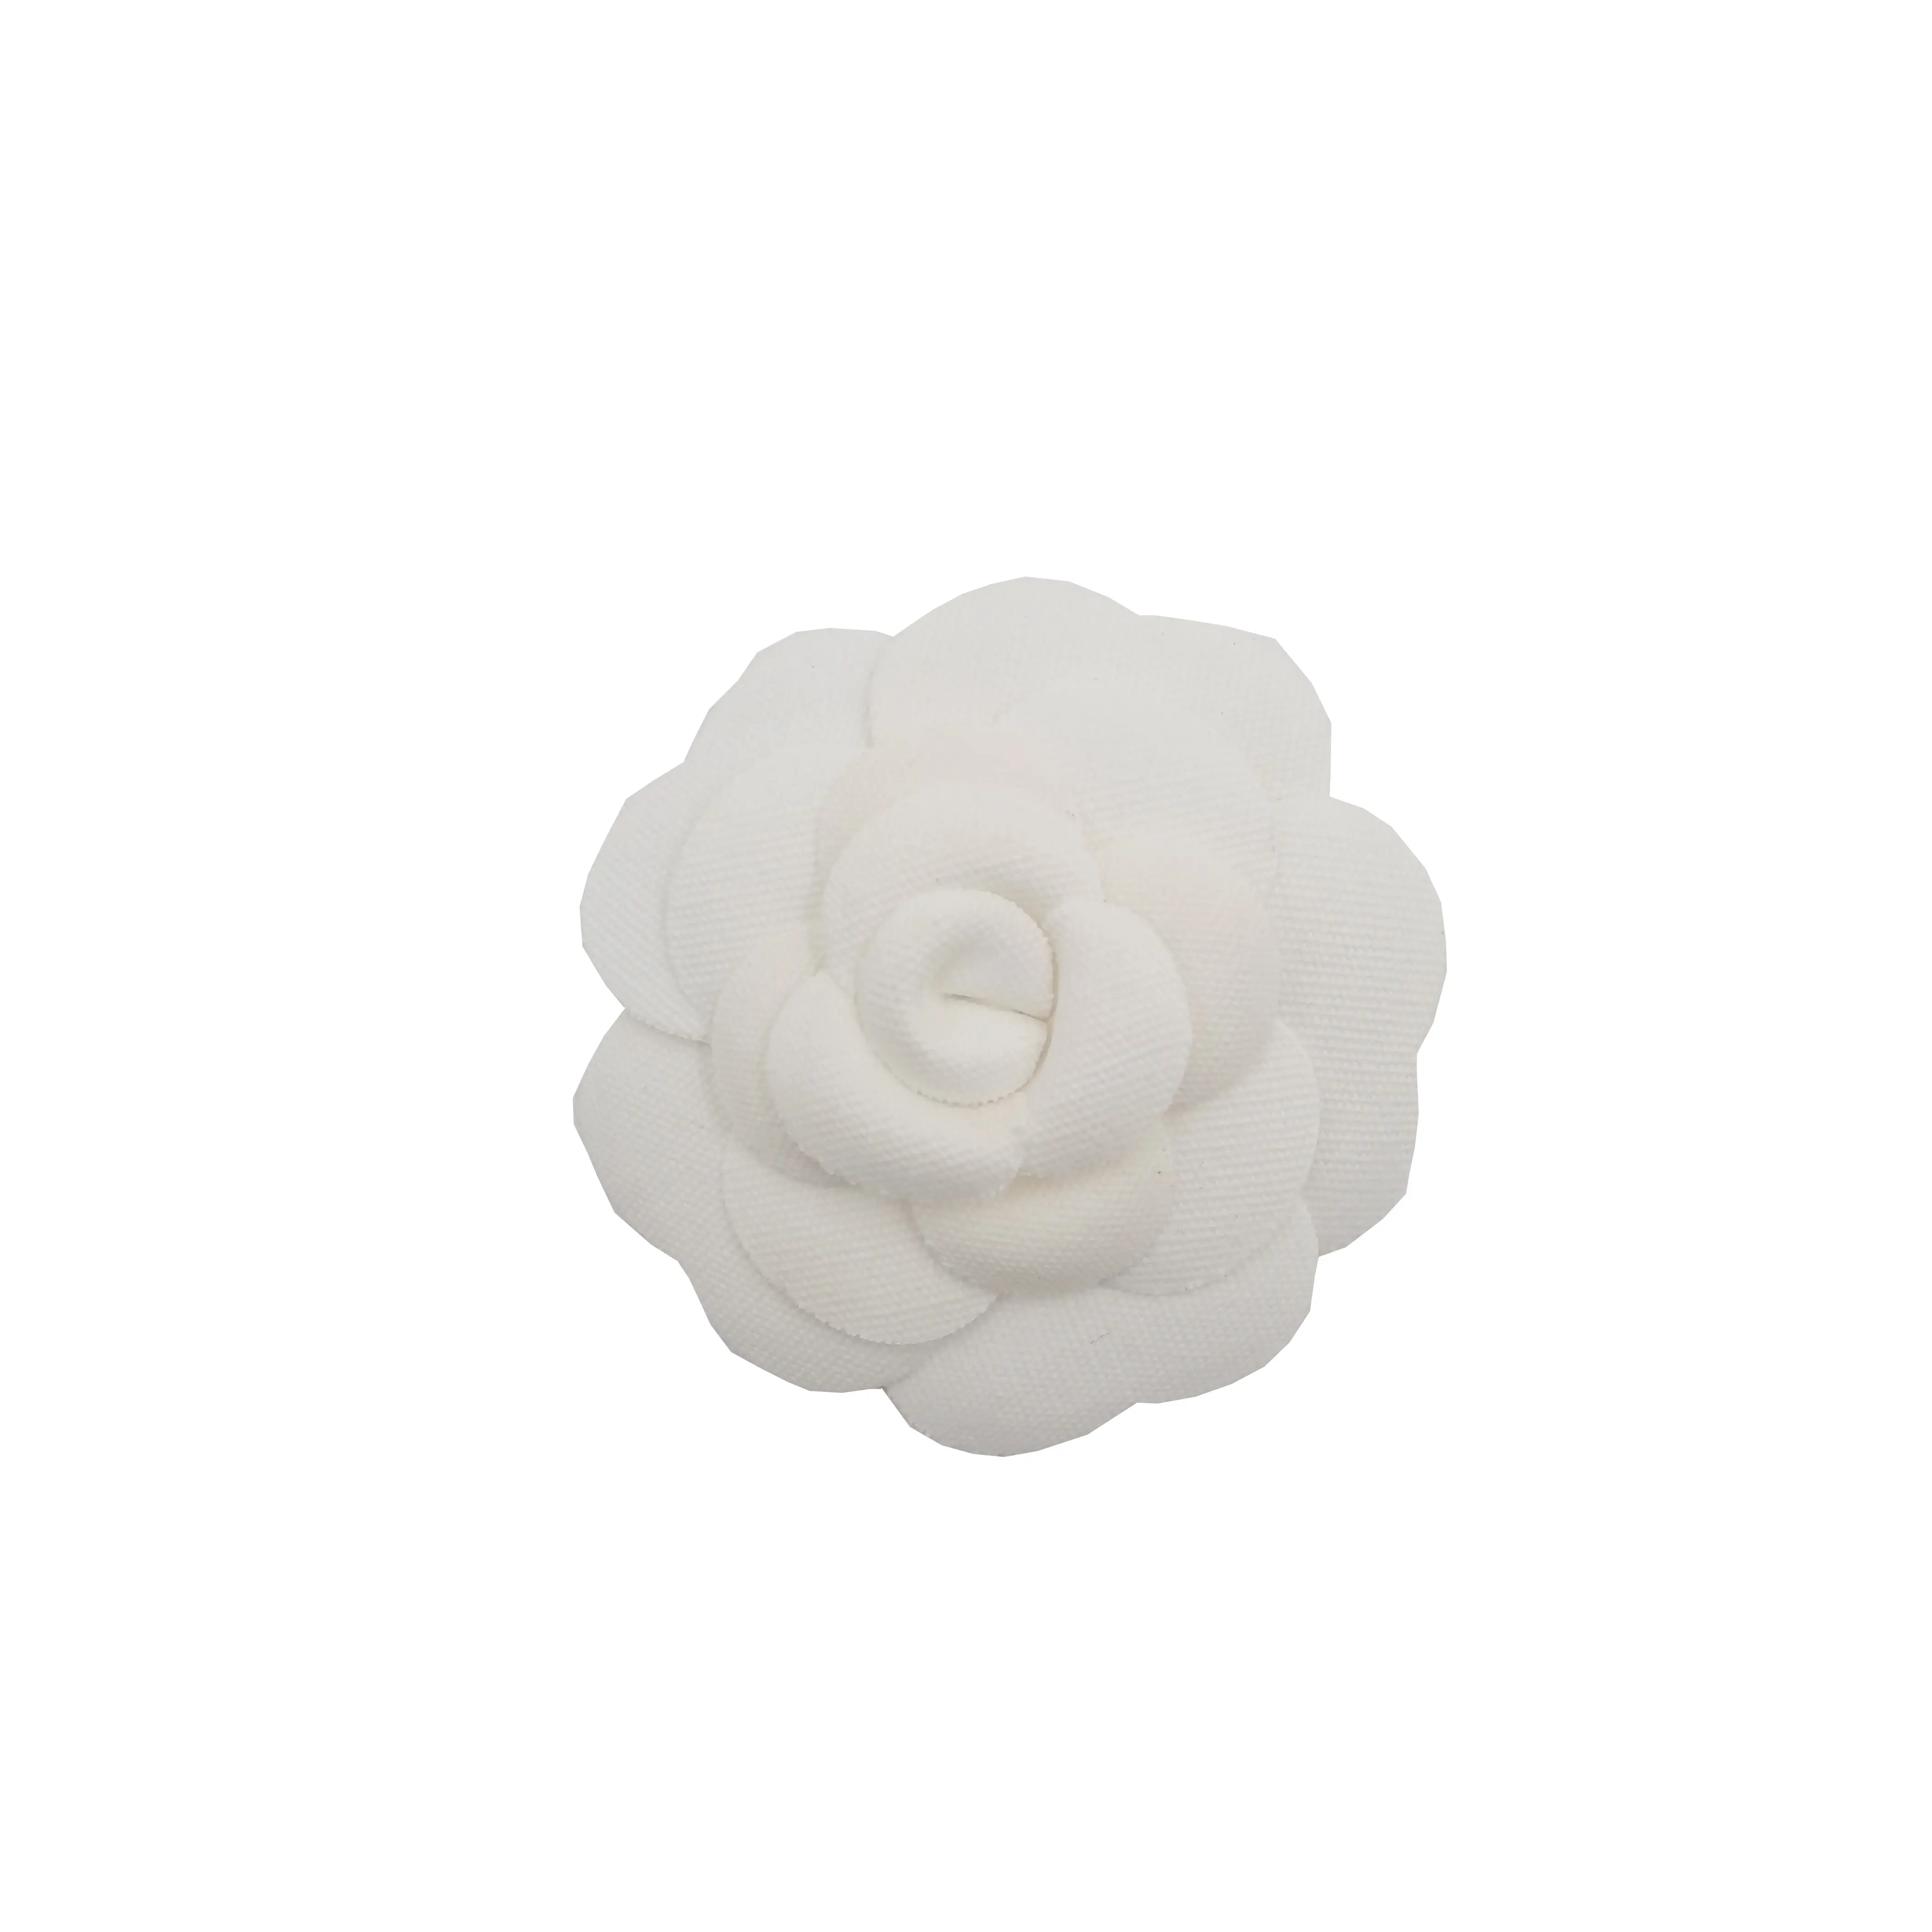 6.5เซนติเมตรทำด้วยมือวินเทจผ้าฝ้ายสีขาวผ้าใบดอกไม้ Camellia สำหรับกล่องตกแต่งหรืองานแต่งงานที่มีกาวกลับ